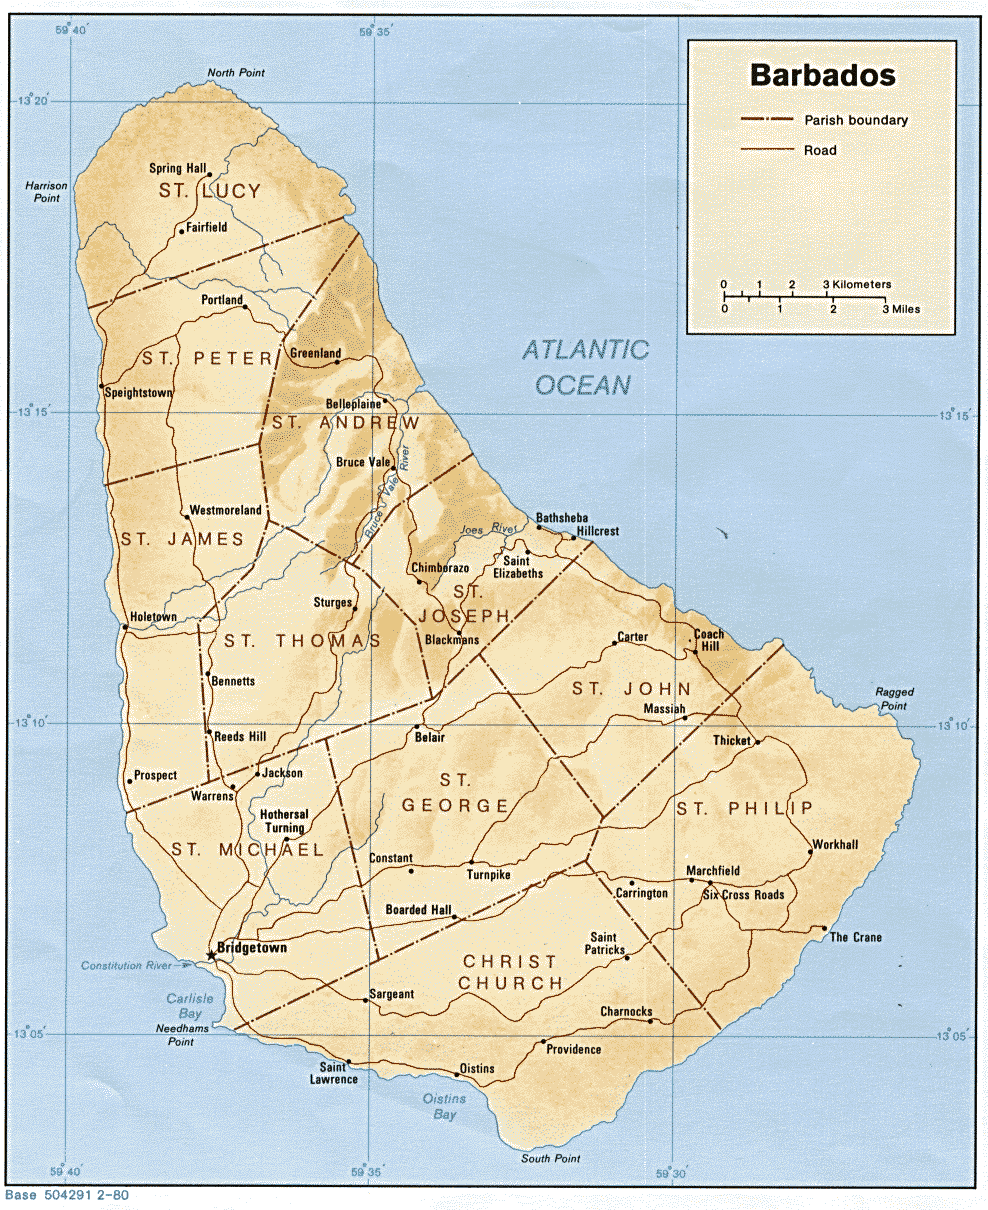 Mapa Relieve Sombreado de Barbados